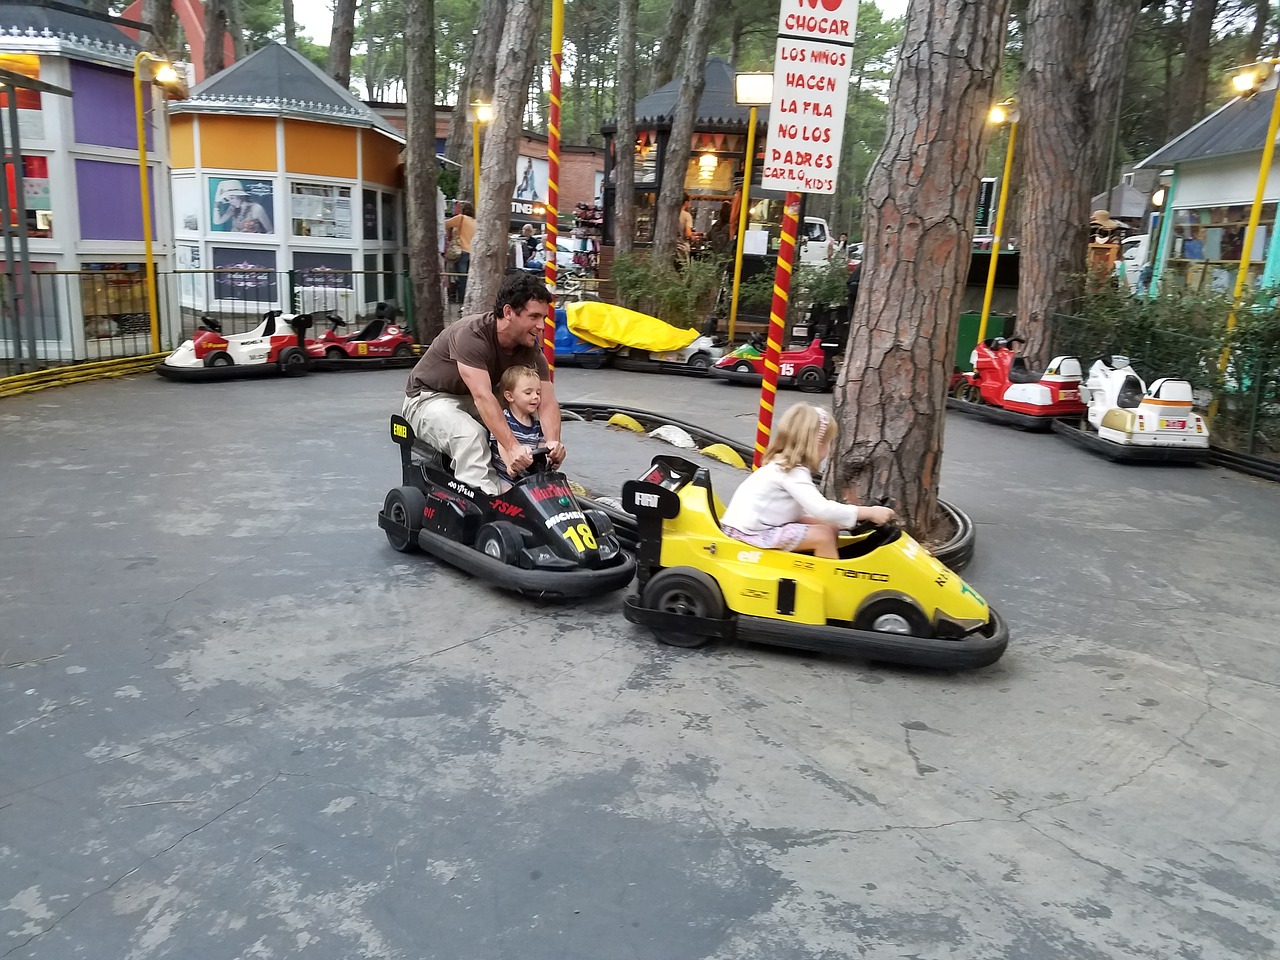 cars karting children free photo